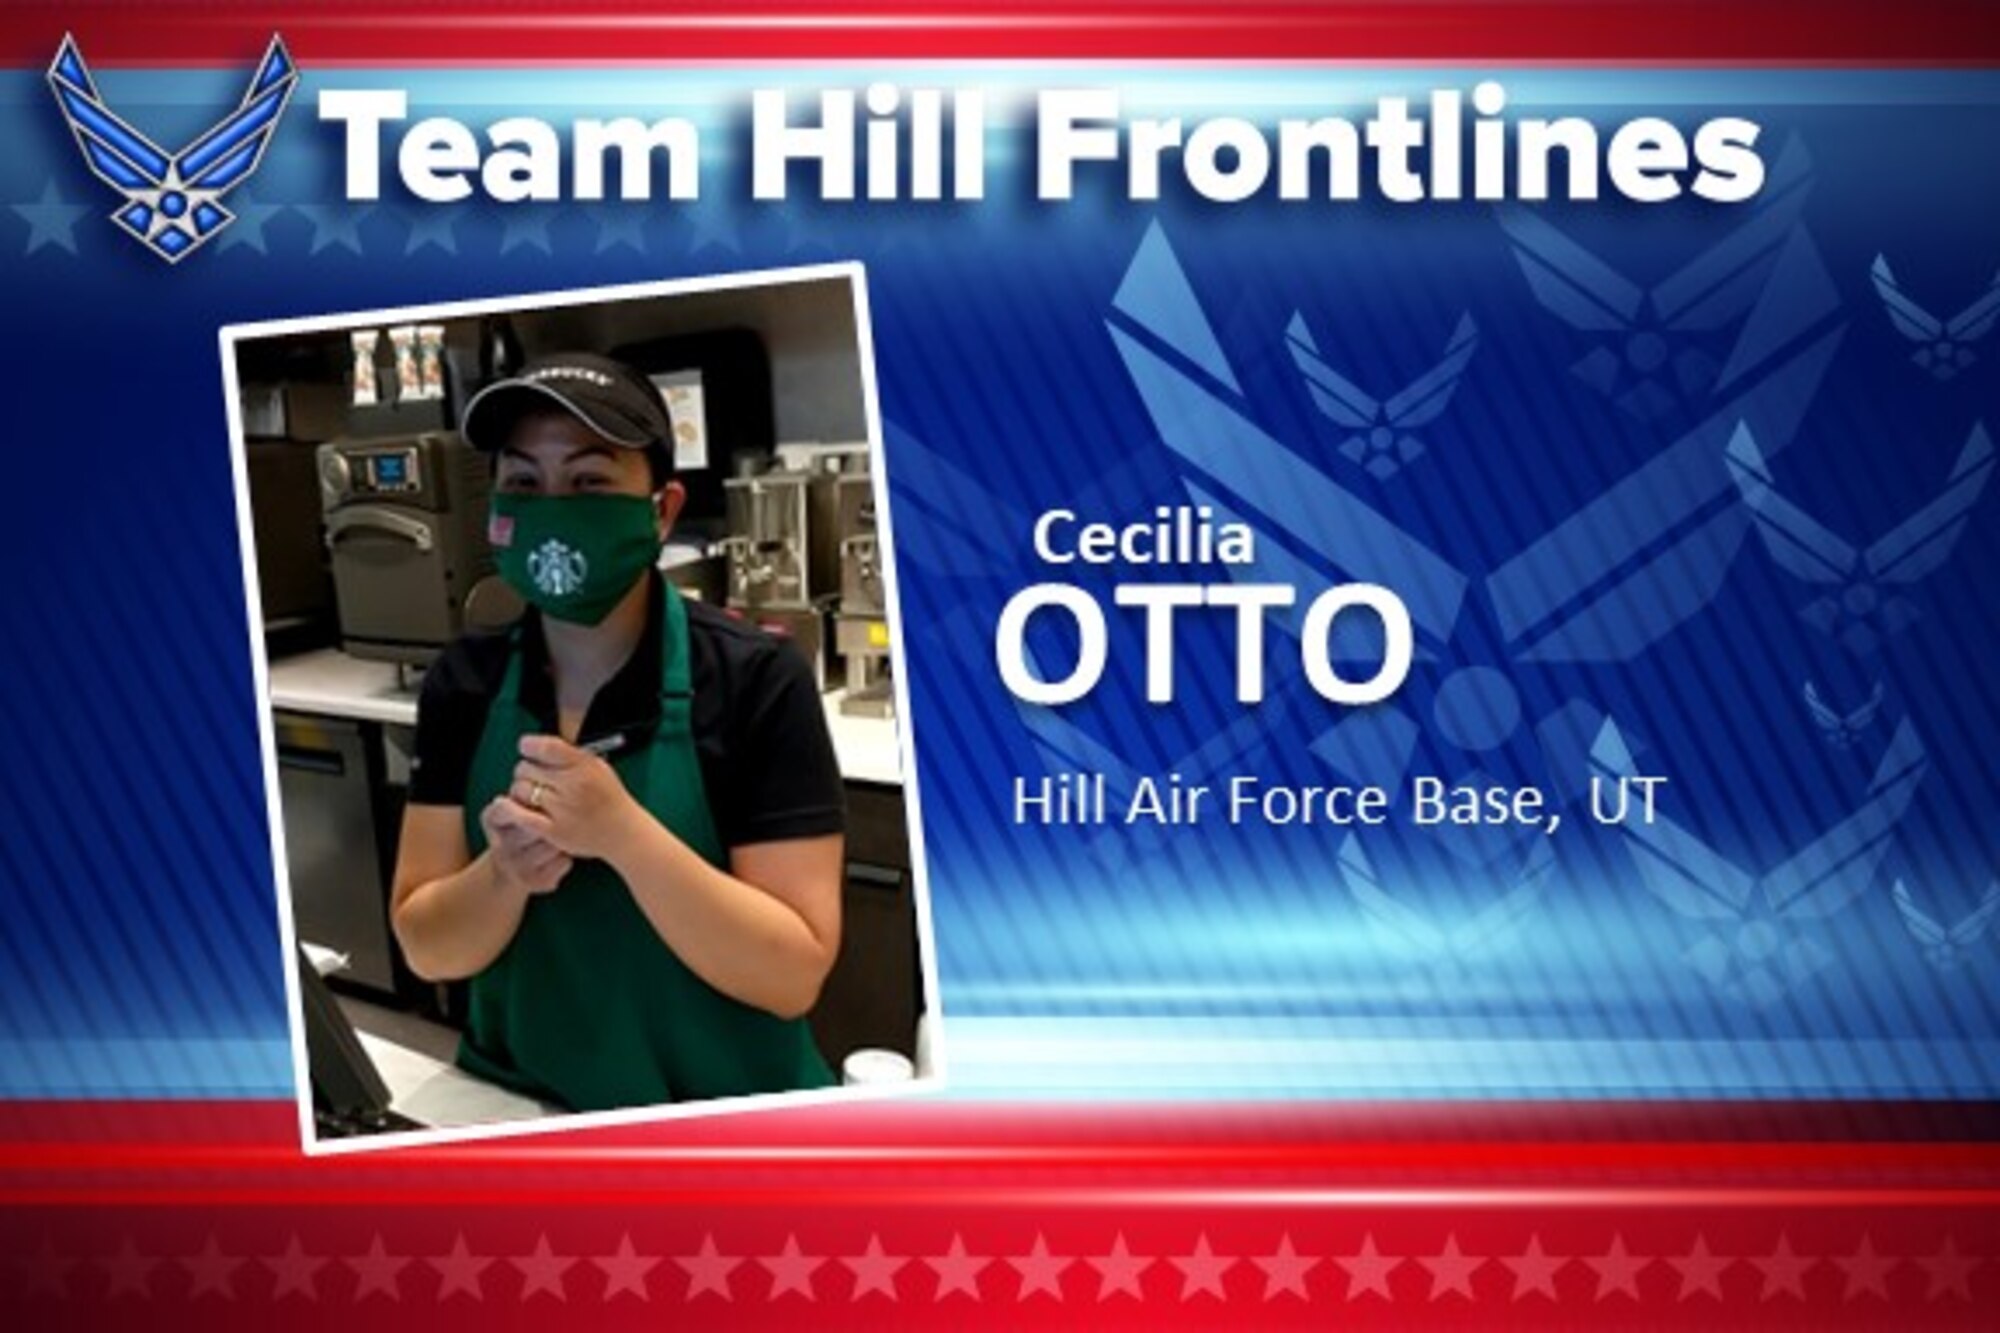 Team Hill Frontlines: Cecilia "Ceci" Otto